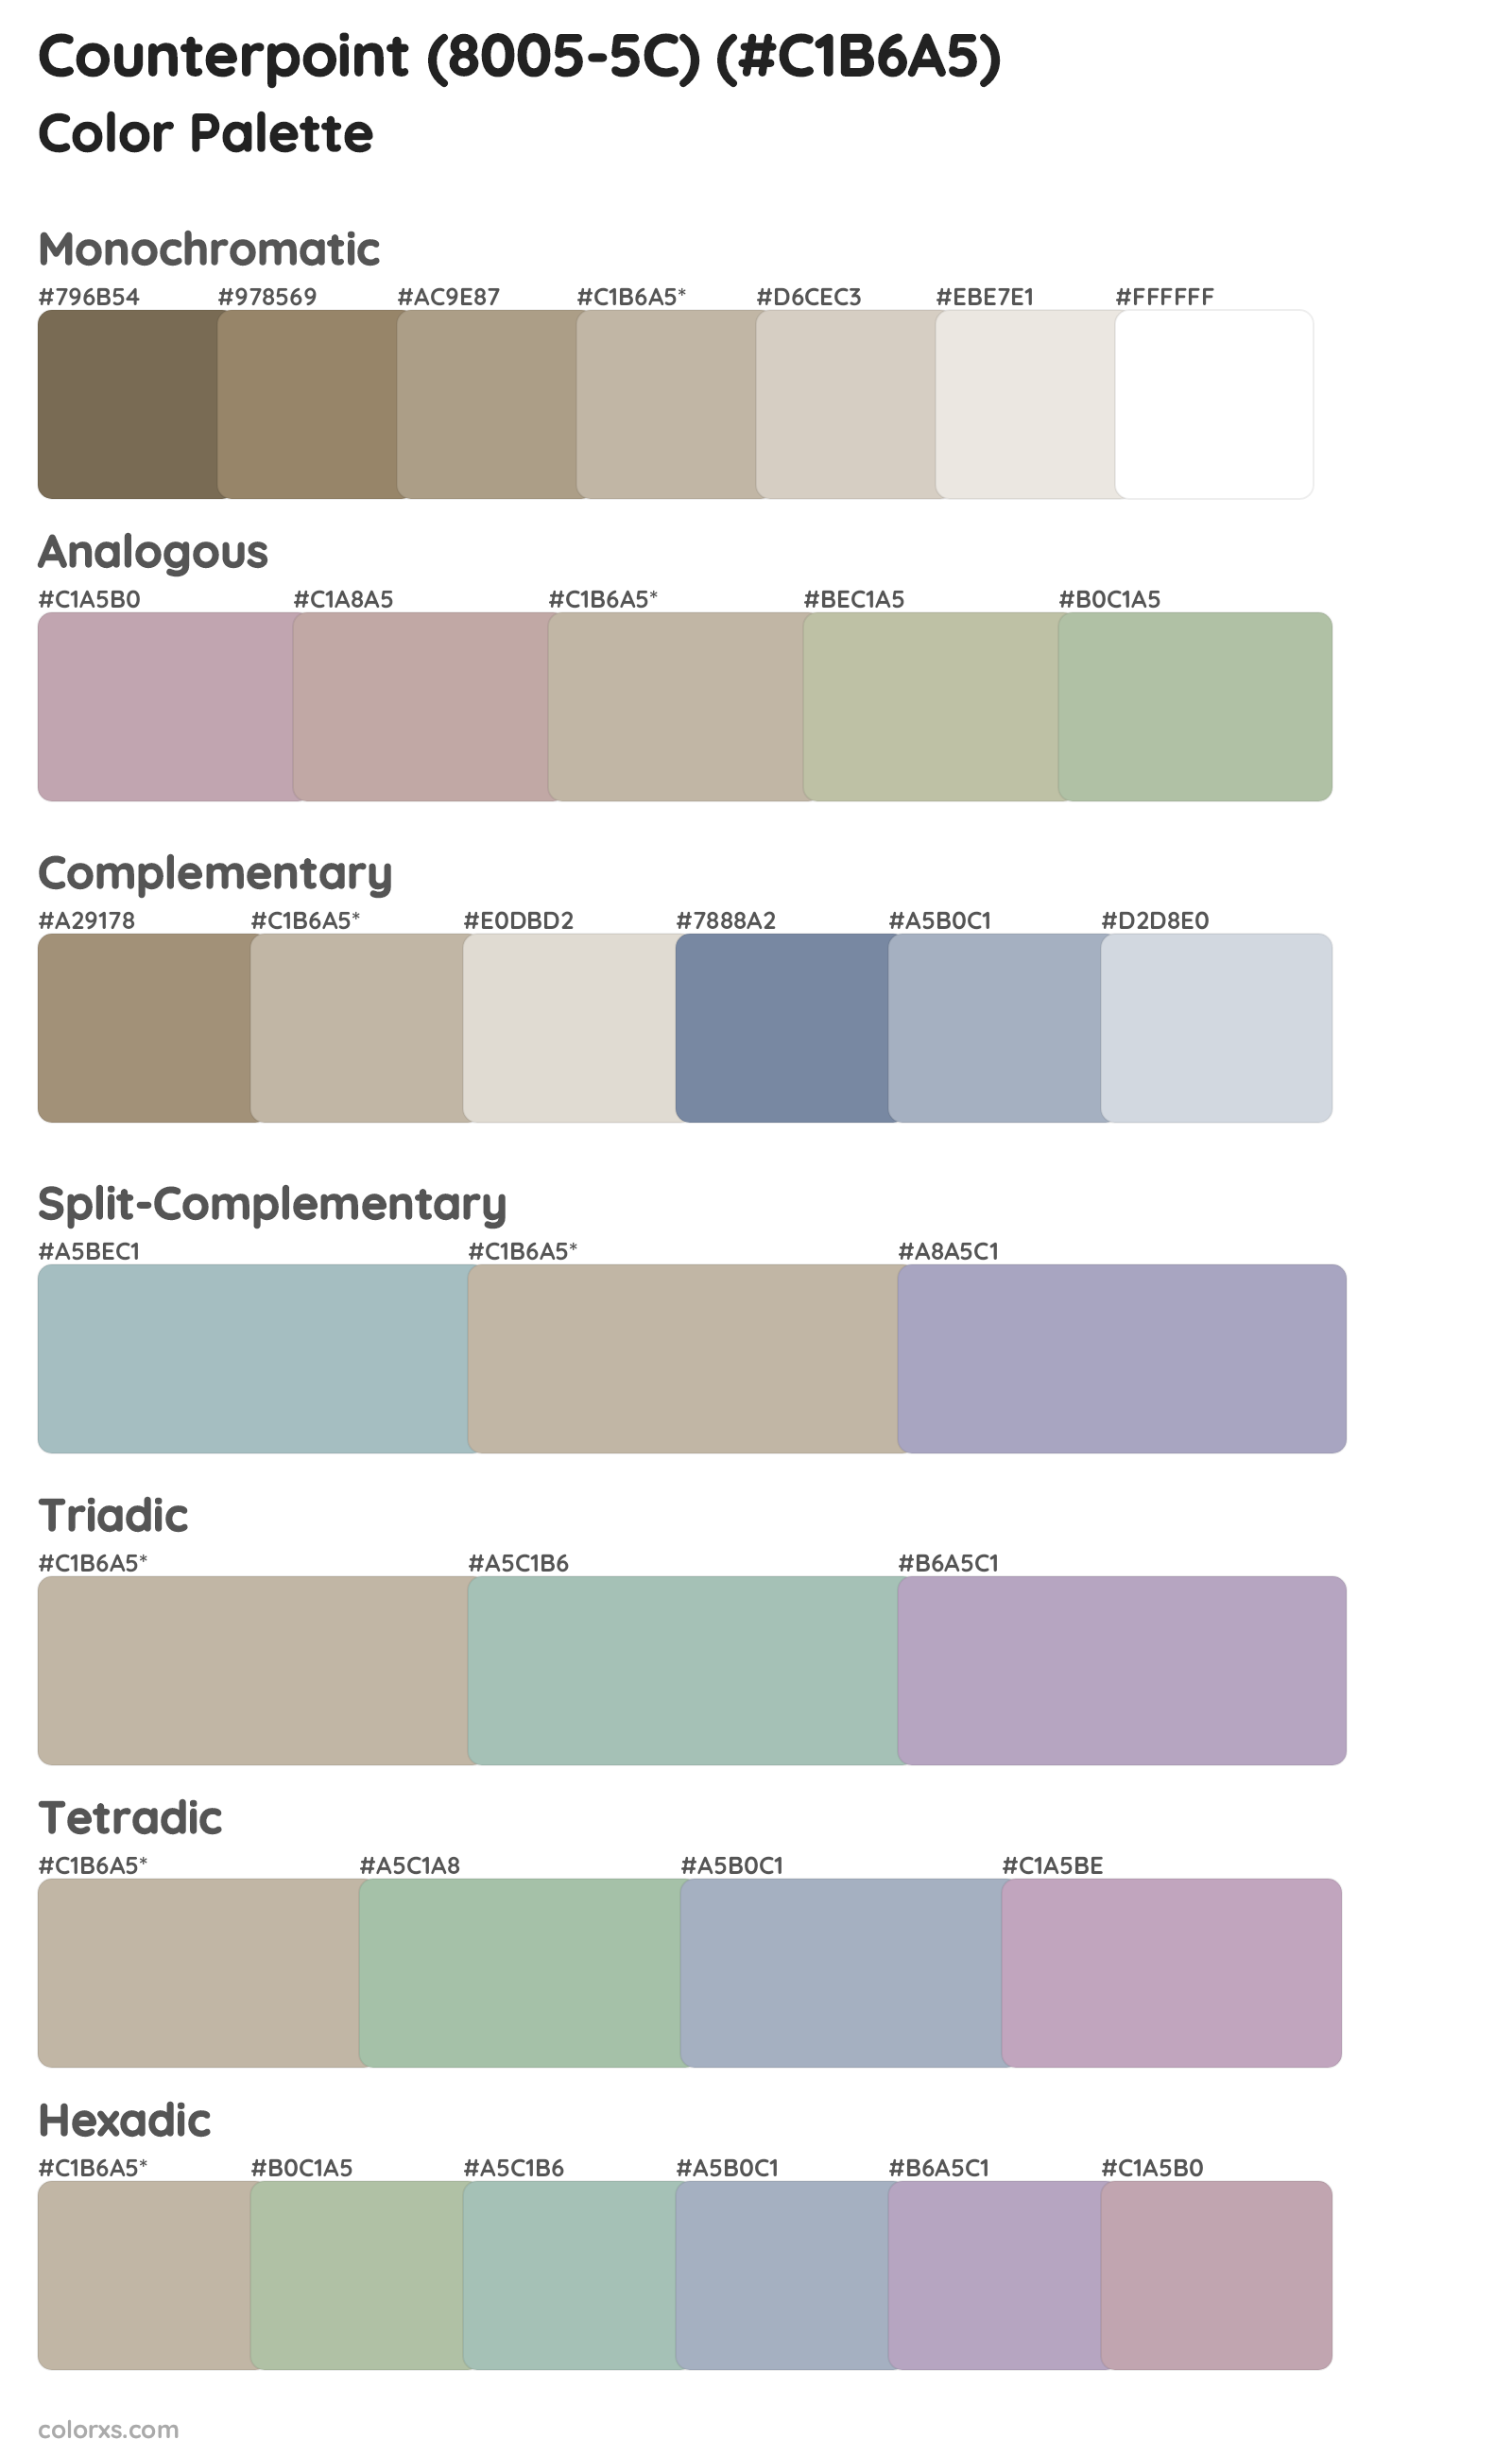 Counterpoint (8005-5C) Color Scheme Palettes